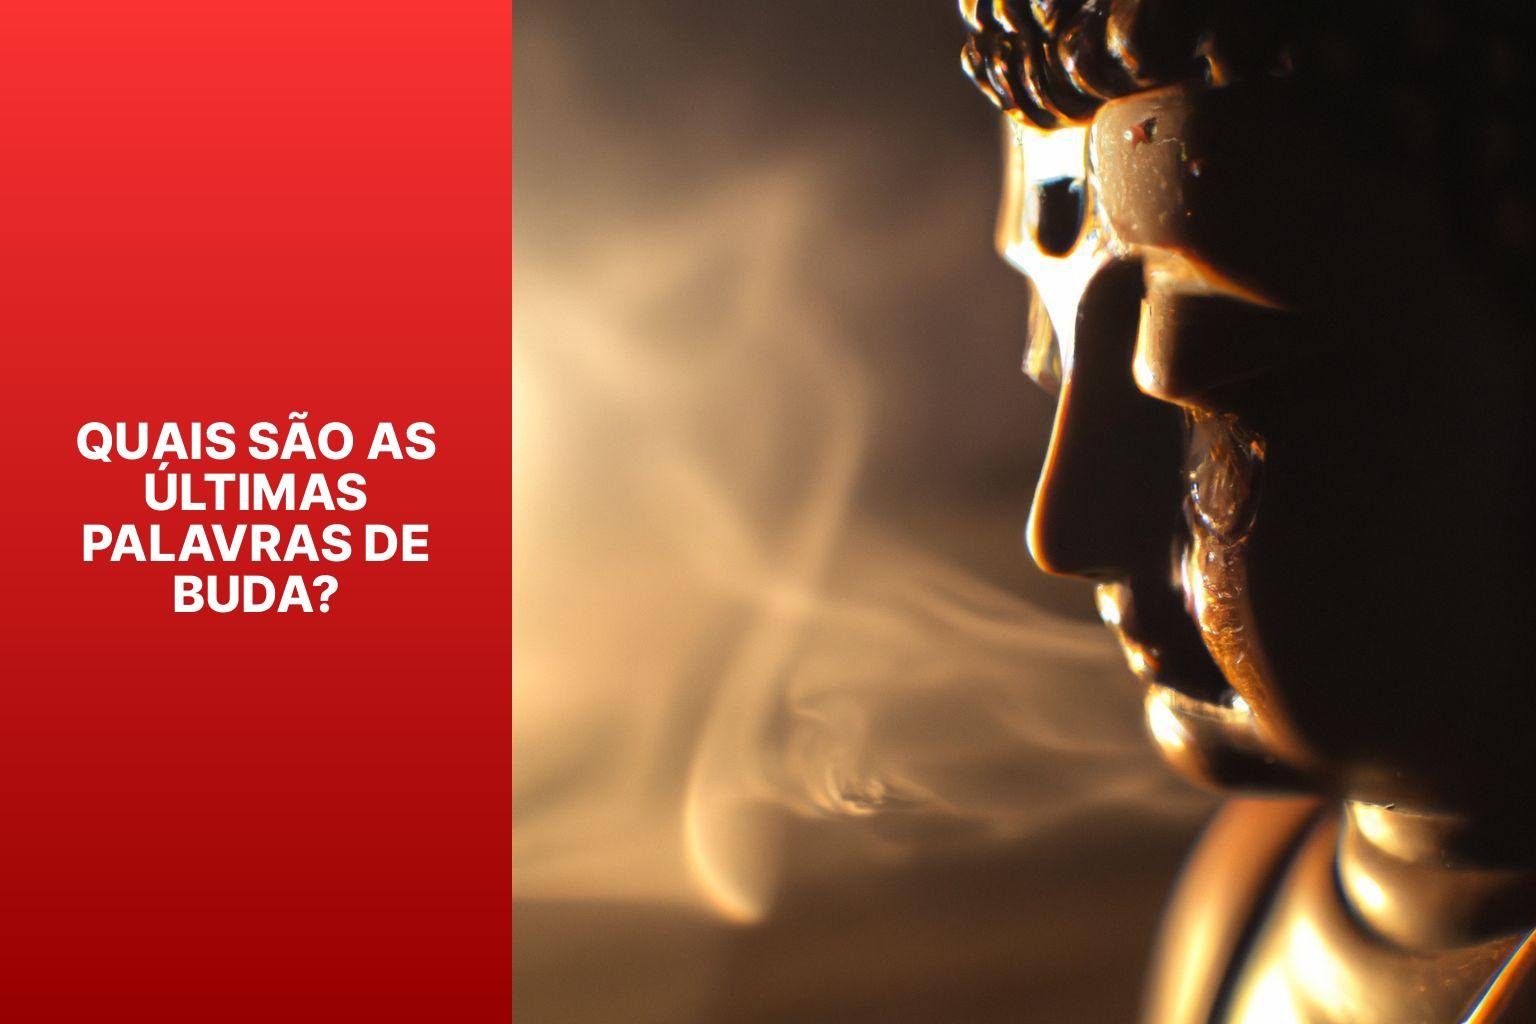 Quais são as Últimas Palavras de Buda? - O Que Buda Disse Antes De Morrer 